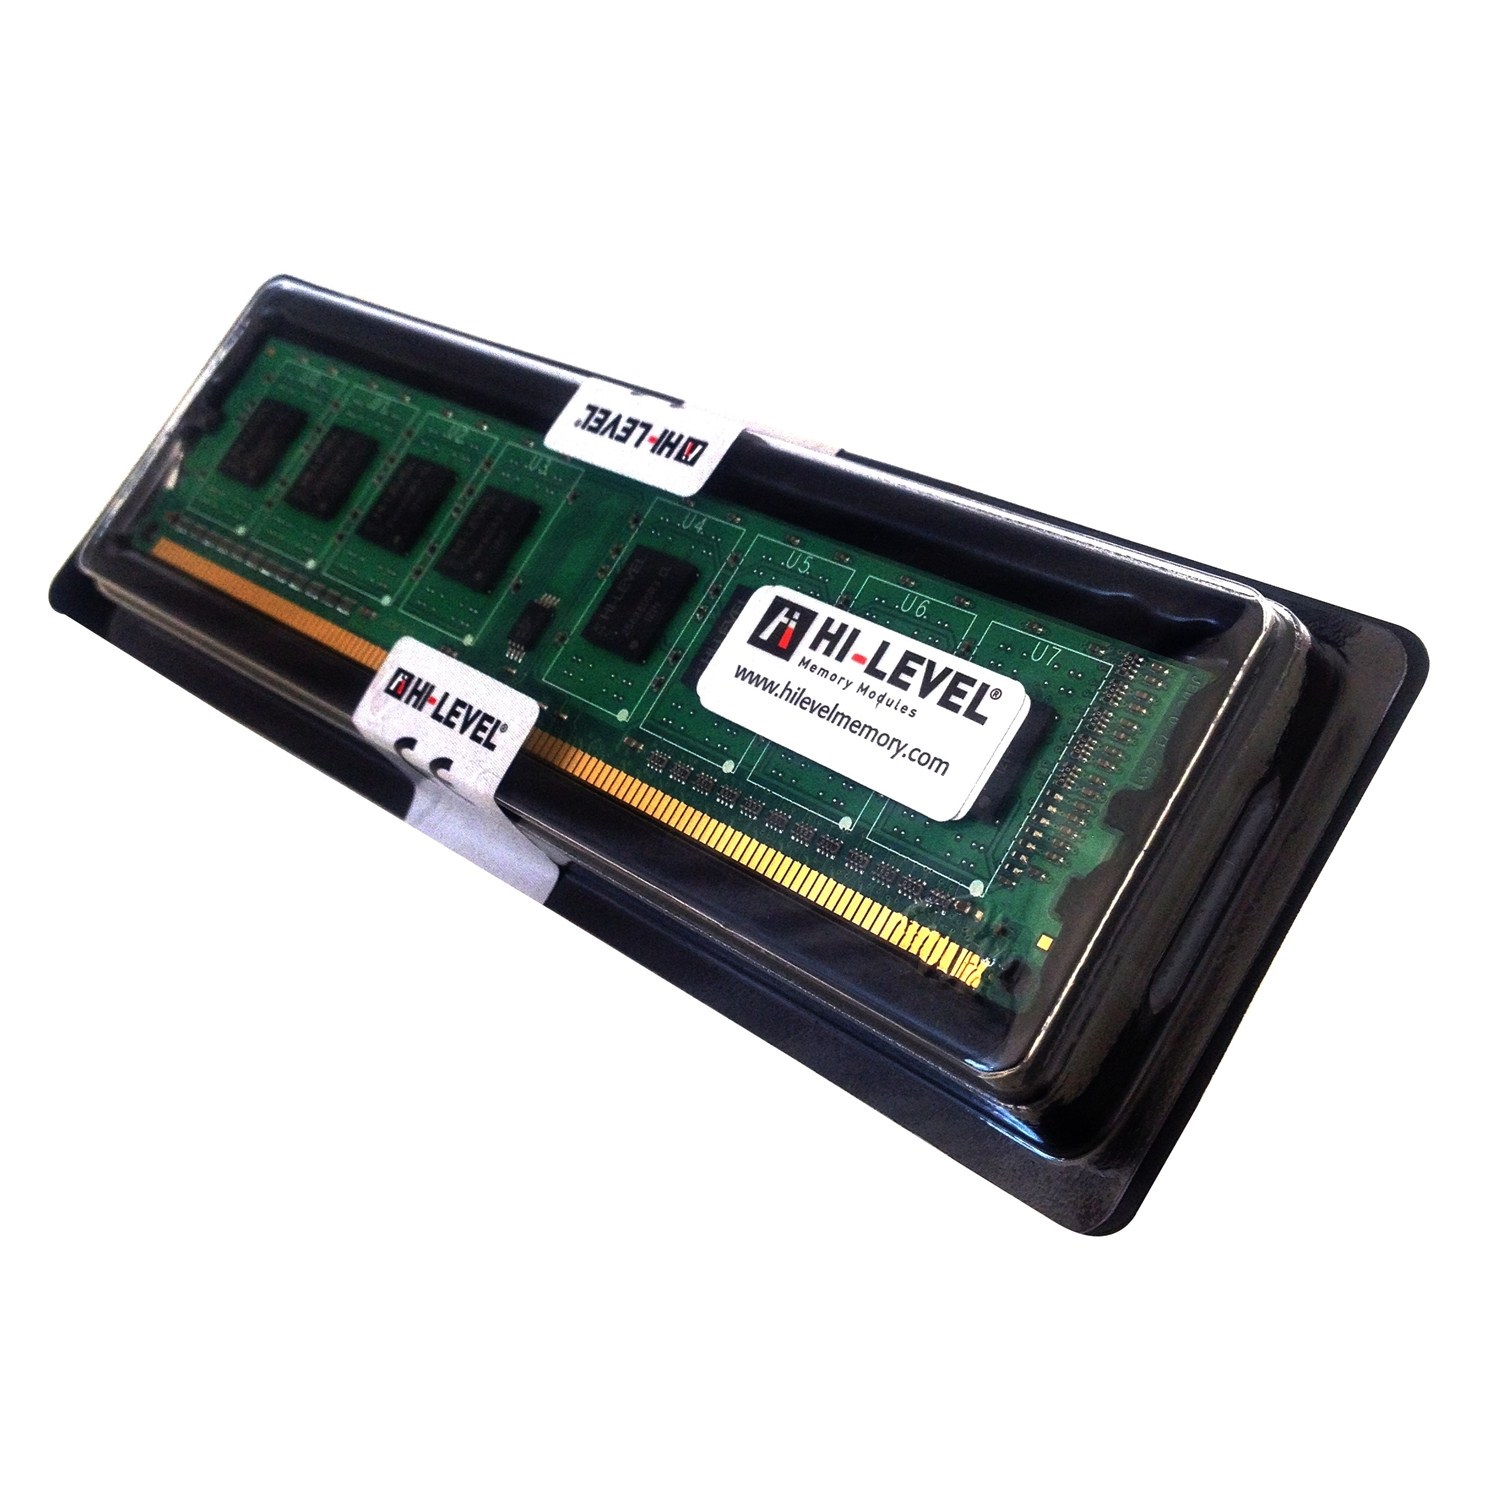 1 GB DDR2 667 MHz HI-LEVEL (KUTULU) (HLV-PC5400-1G)